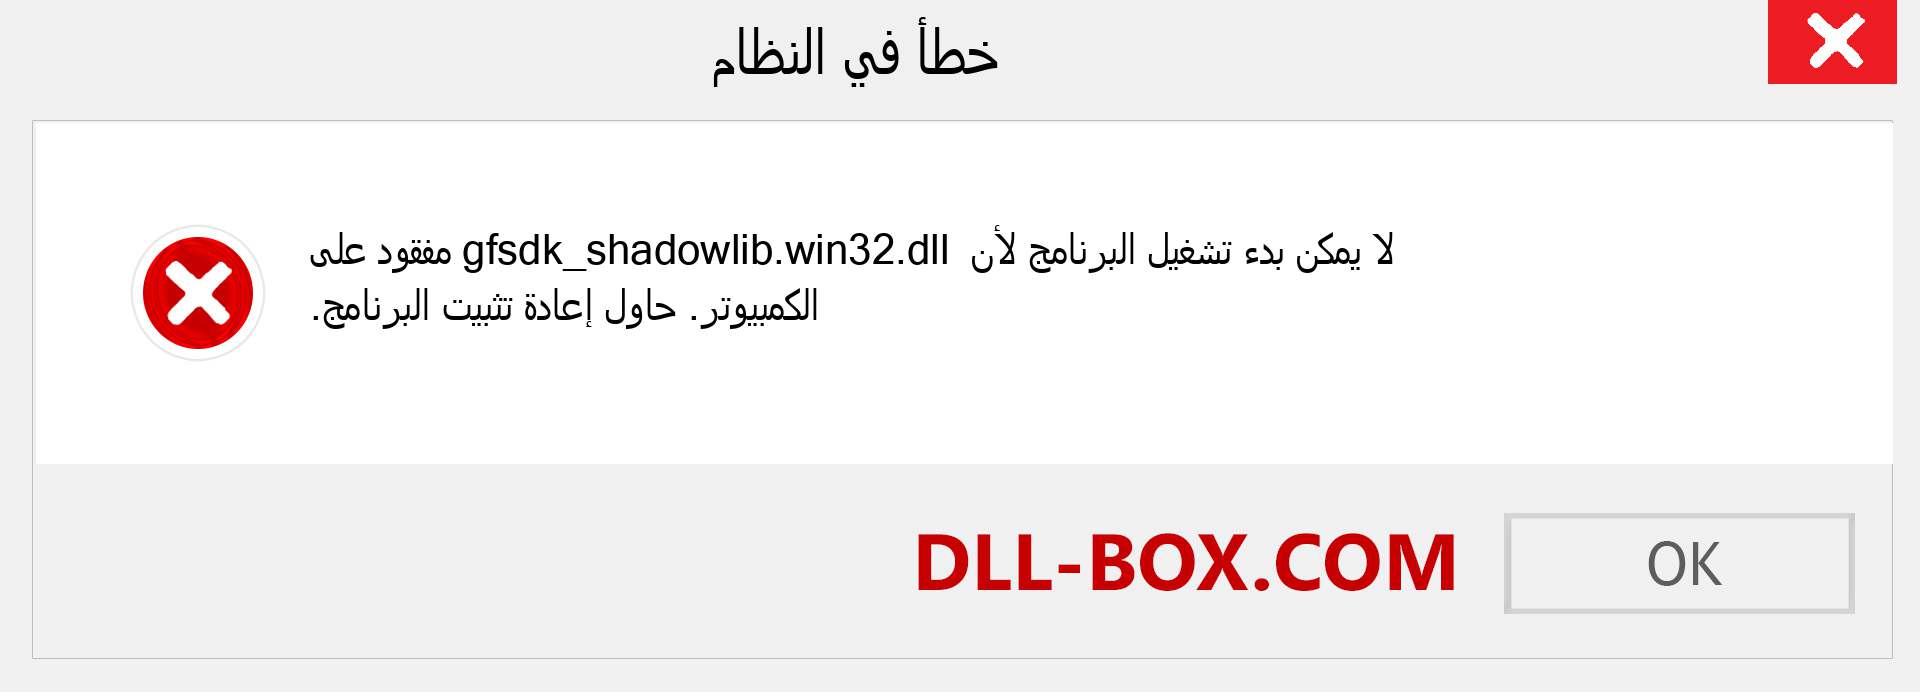 ملف gfsdk_shadowlib.win32.dll مفقود ؟. التنزيل لنظام التشغيل Windows 7 و 8 و 10 - إصلاح خطأ gfsdk_shadowlib.win32 dll المفقود على Windows والصور والصور